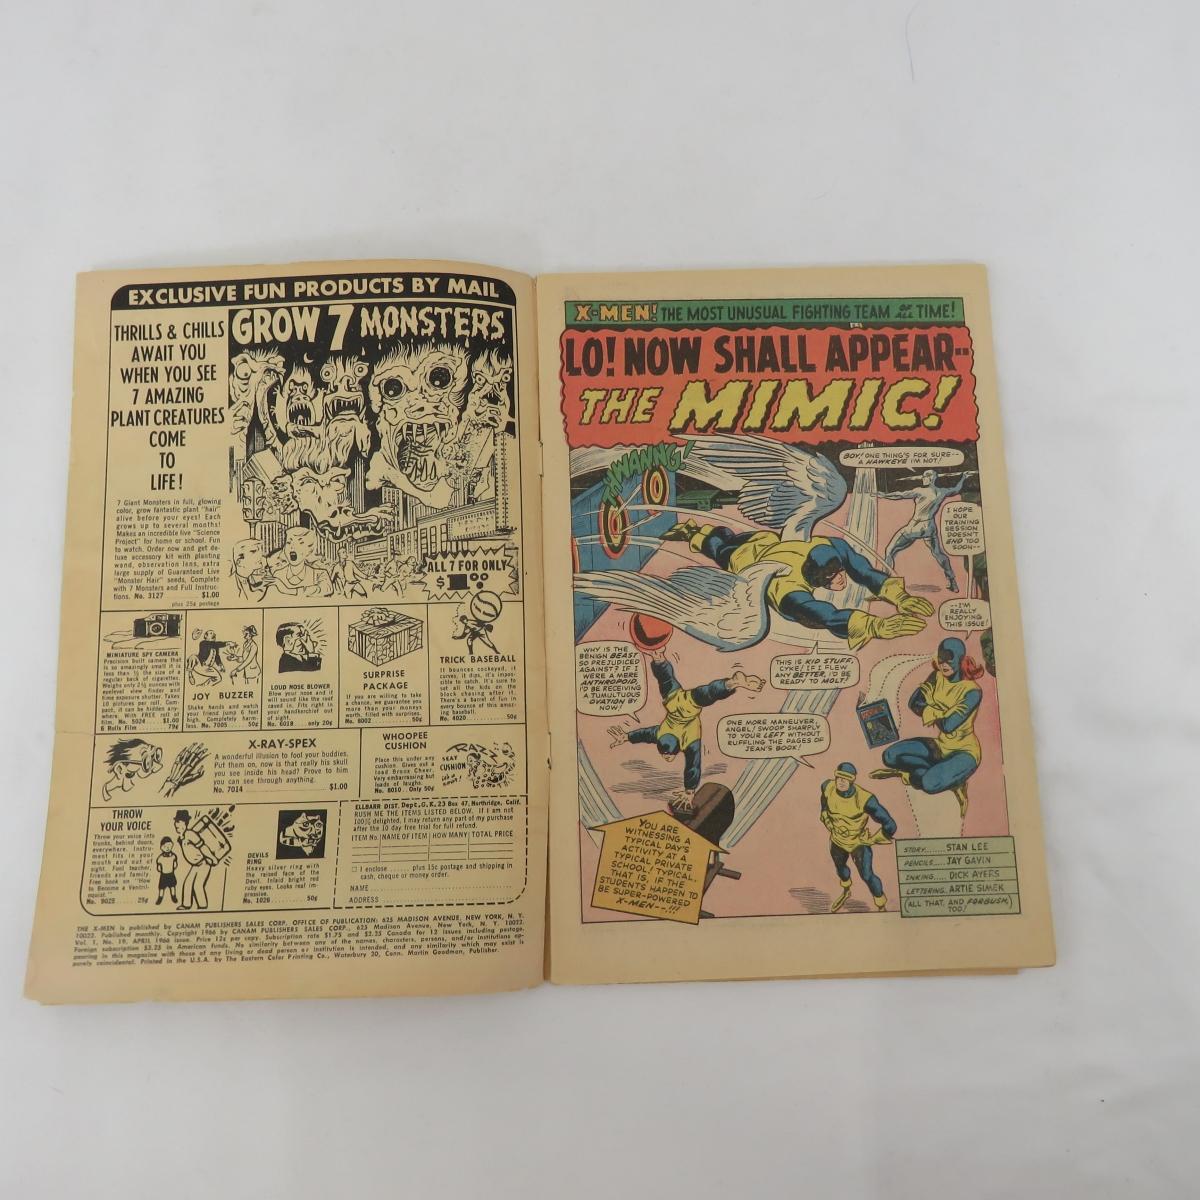 Marvel Comics The X-Men #19 1st The Mimic